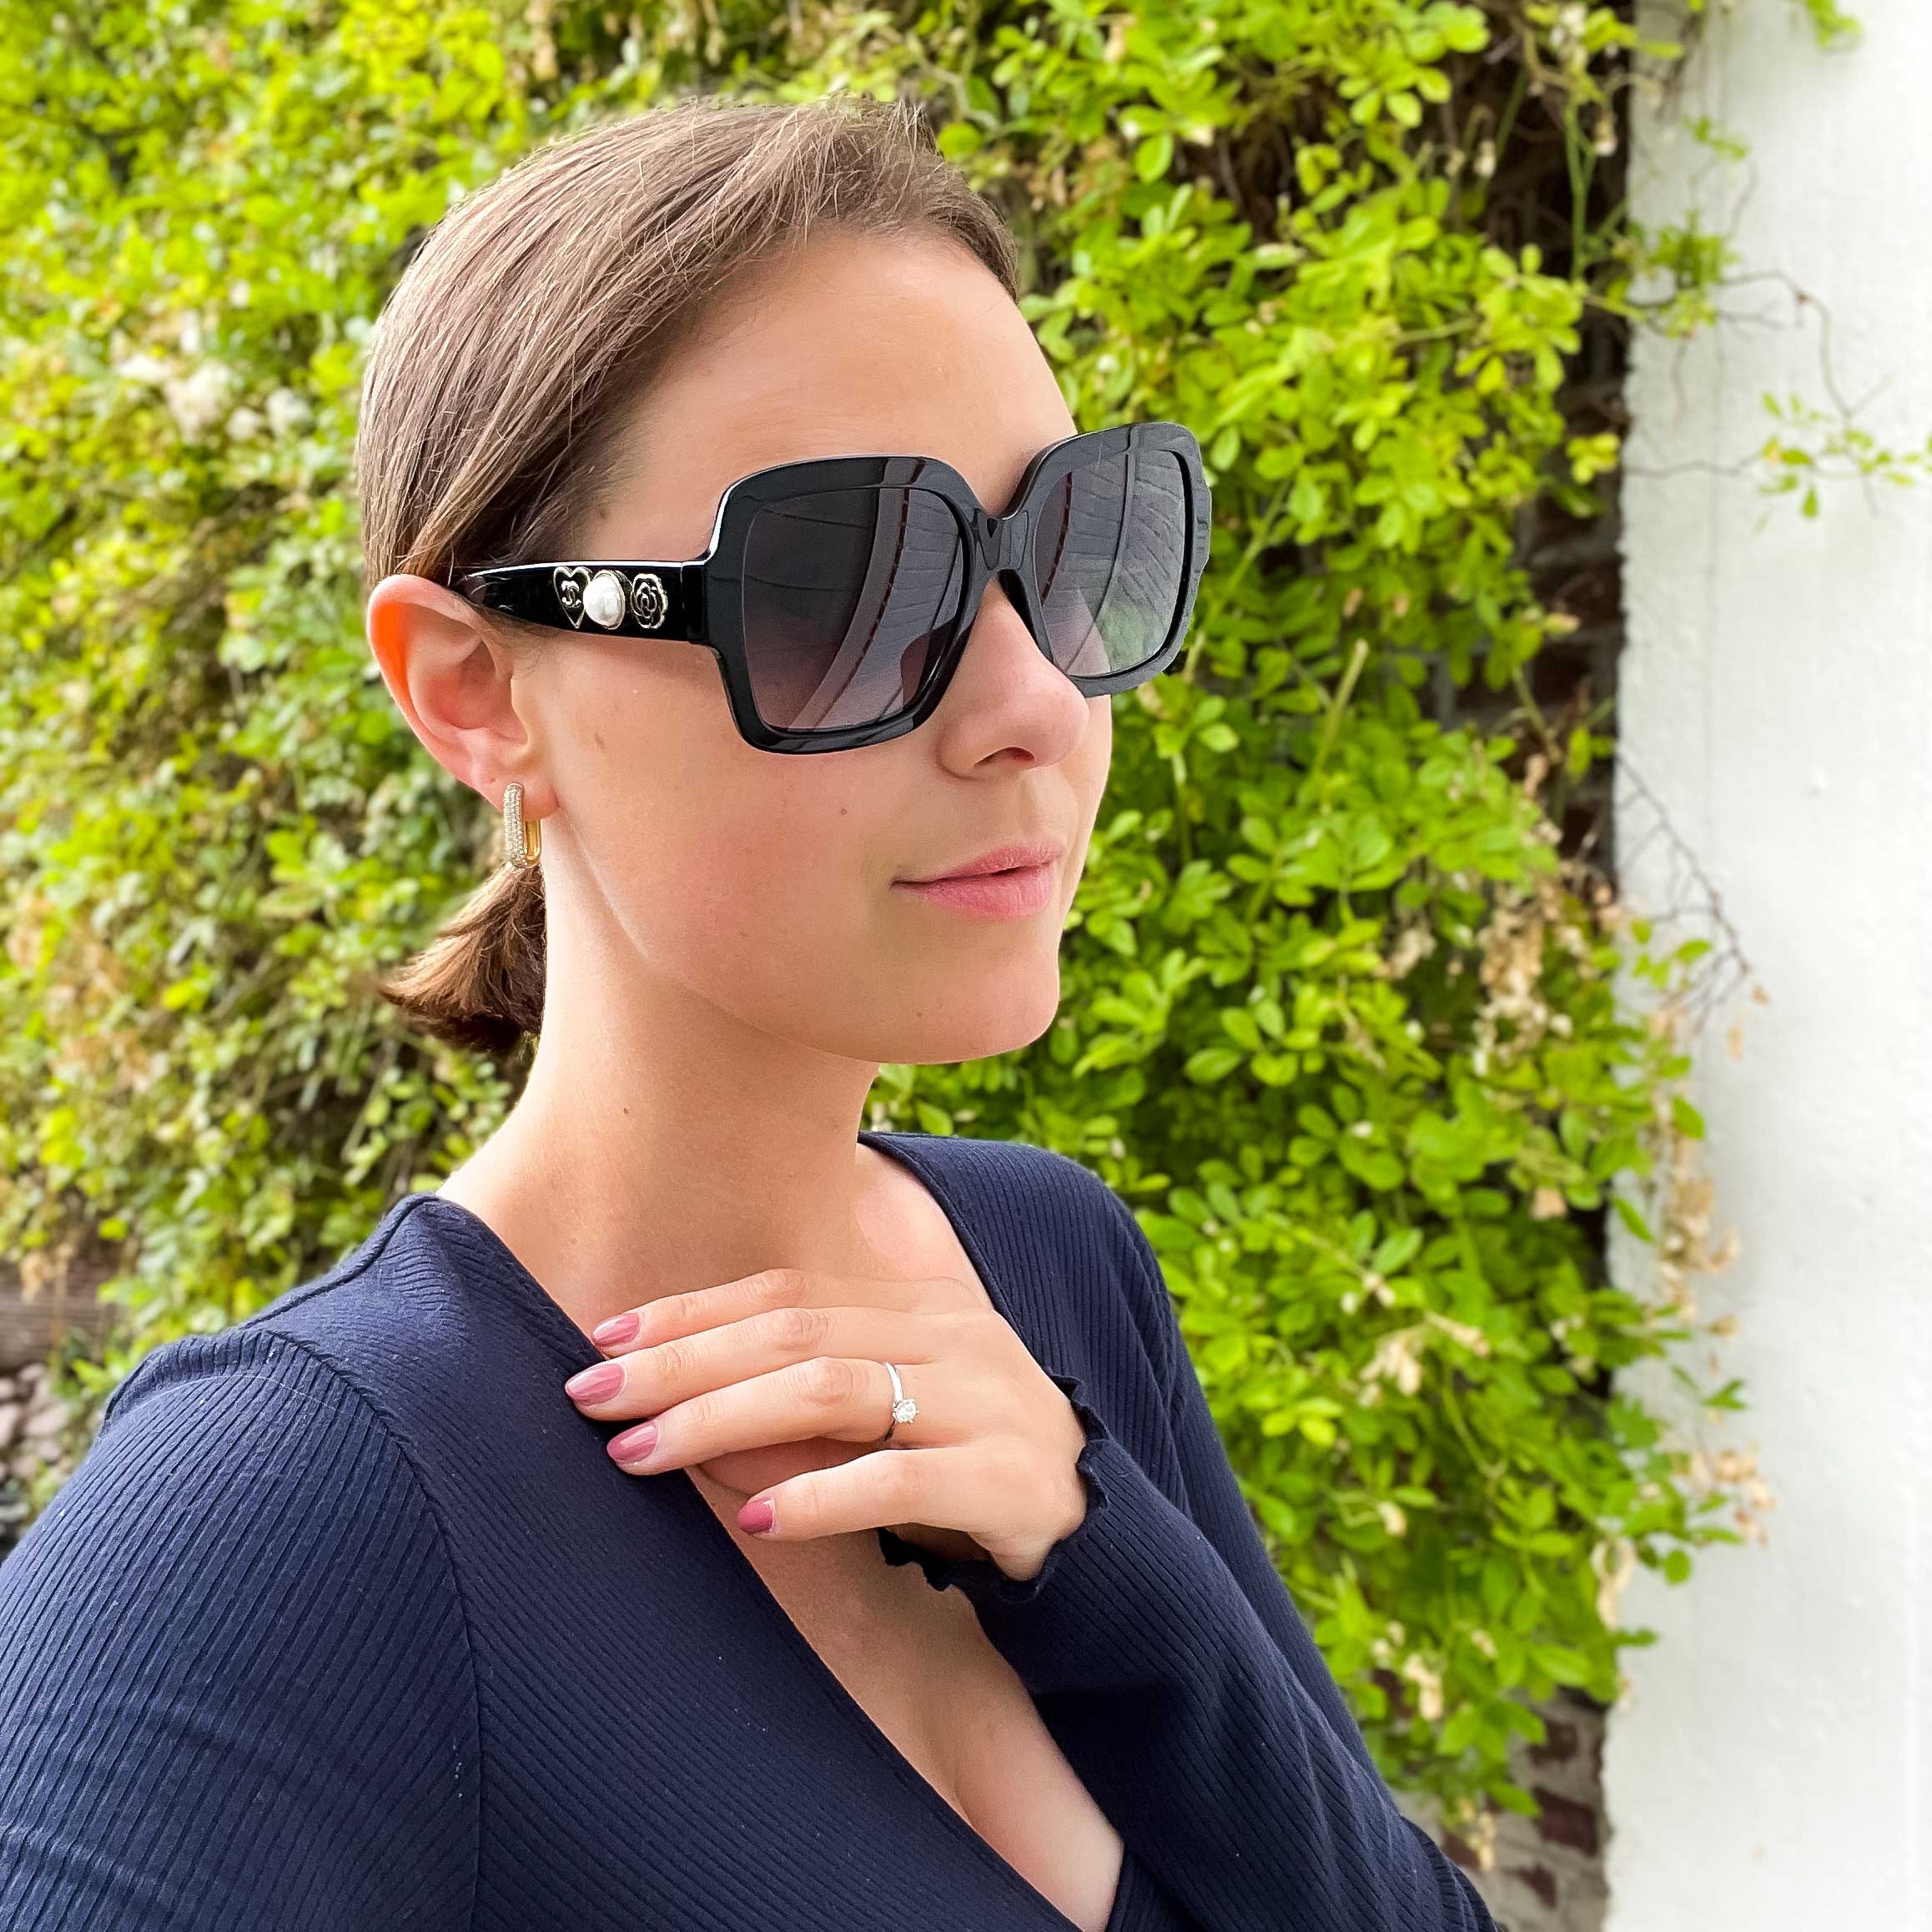 Chanel Coco Charms brillen & zonnebrillen - Optiek Lammerant Deinze